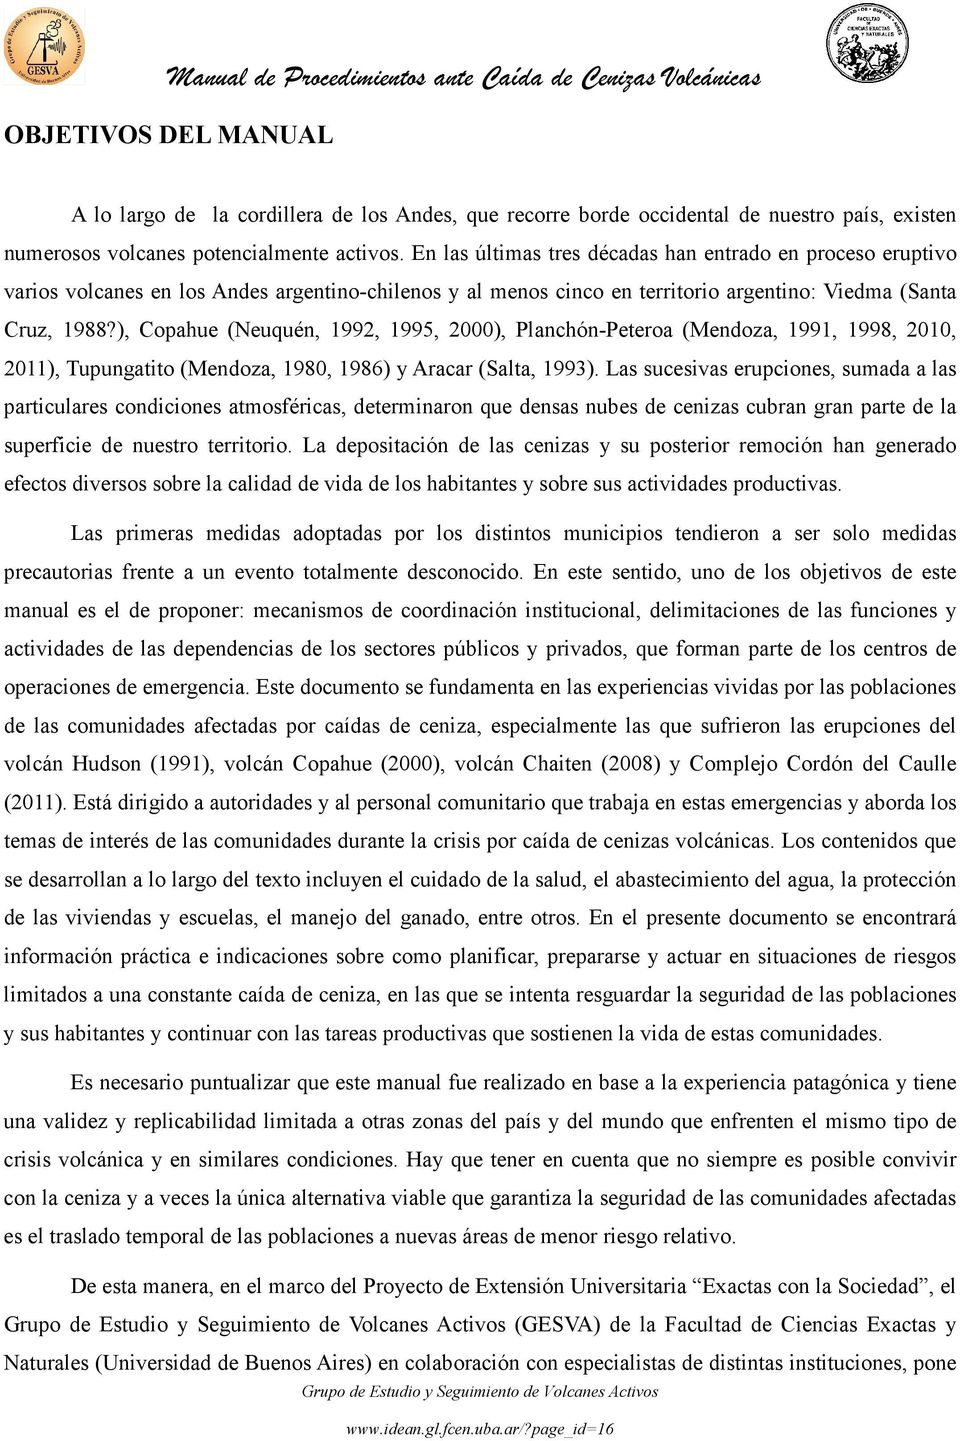 ), Copahue (Neuquén, 1992, 1995, 2000), Planchón-Peteroa (Mendoza, 1991, 1998, 2010, 2011), Tupungatito (Mendoza, 1980, 1986) y Aracar (Salta, 1993).